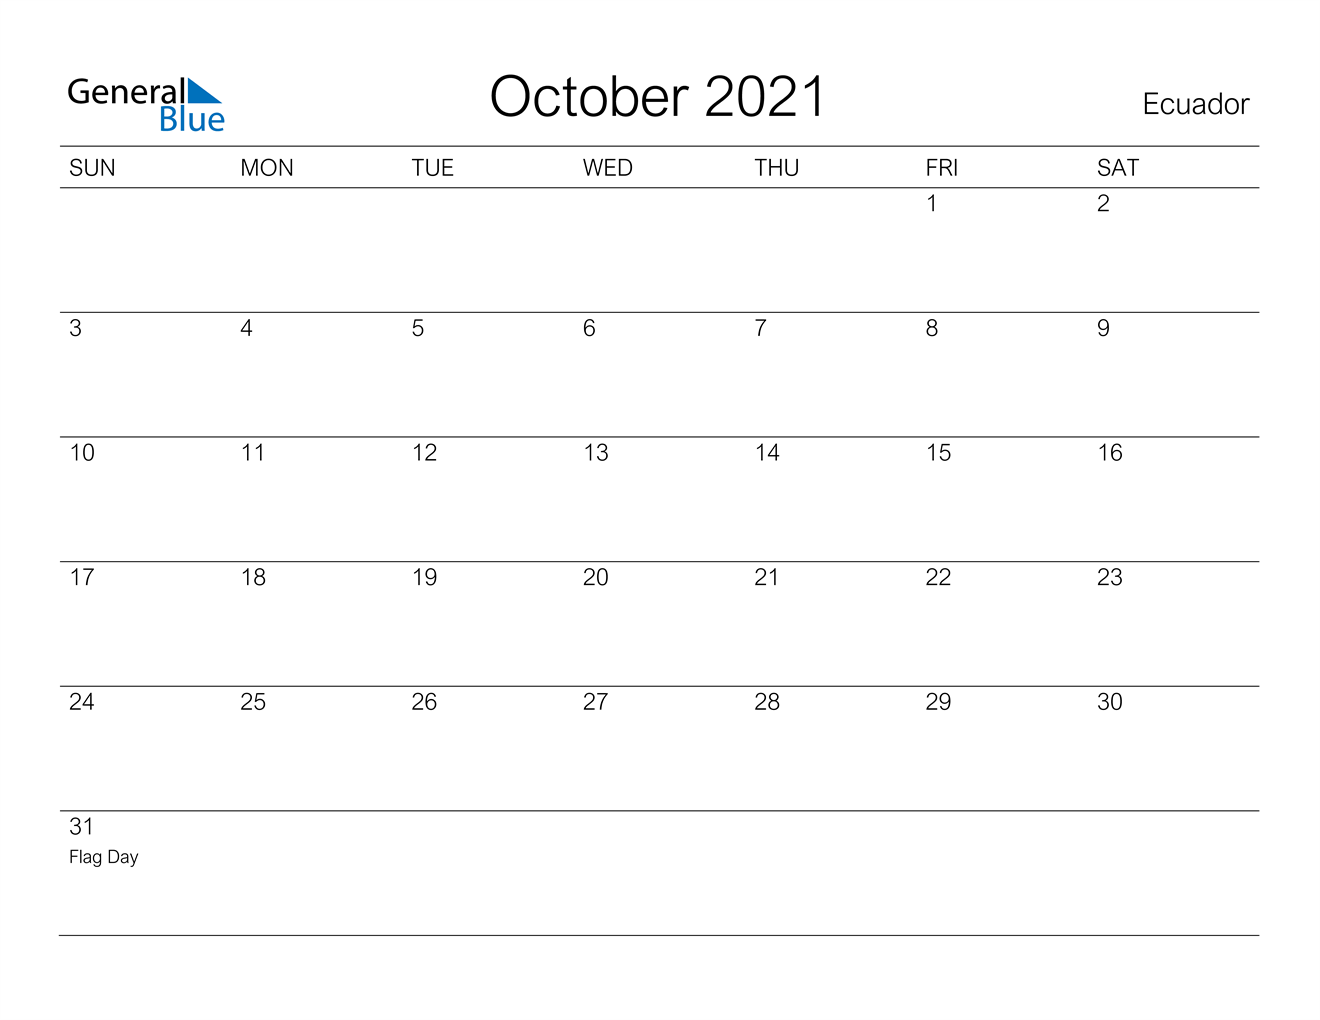 October 2021 Calendar - Ecuador